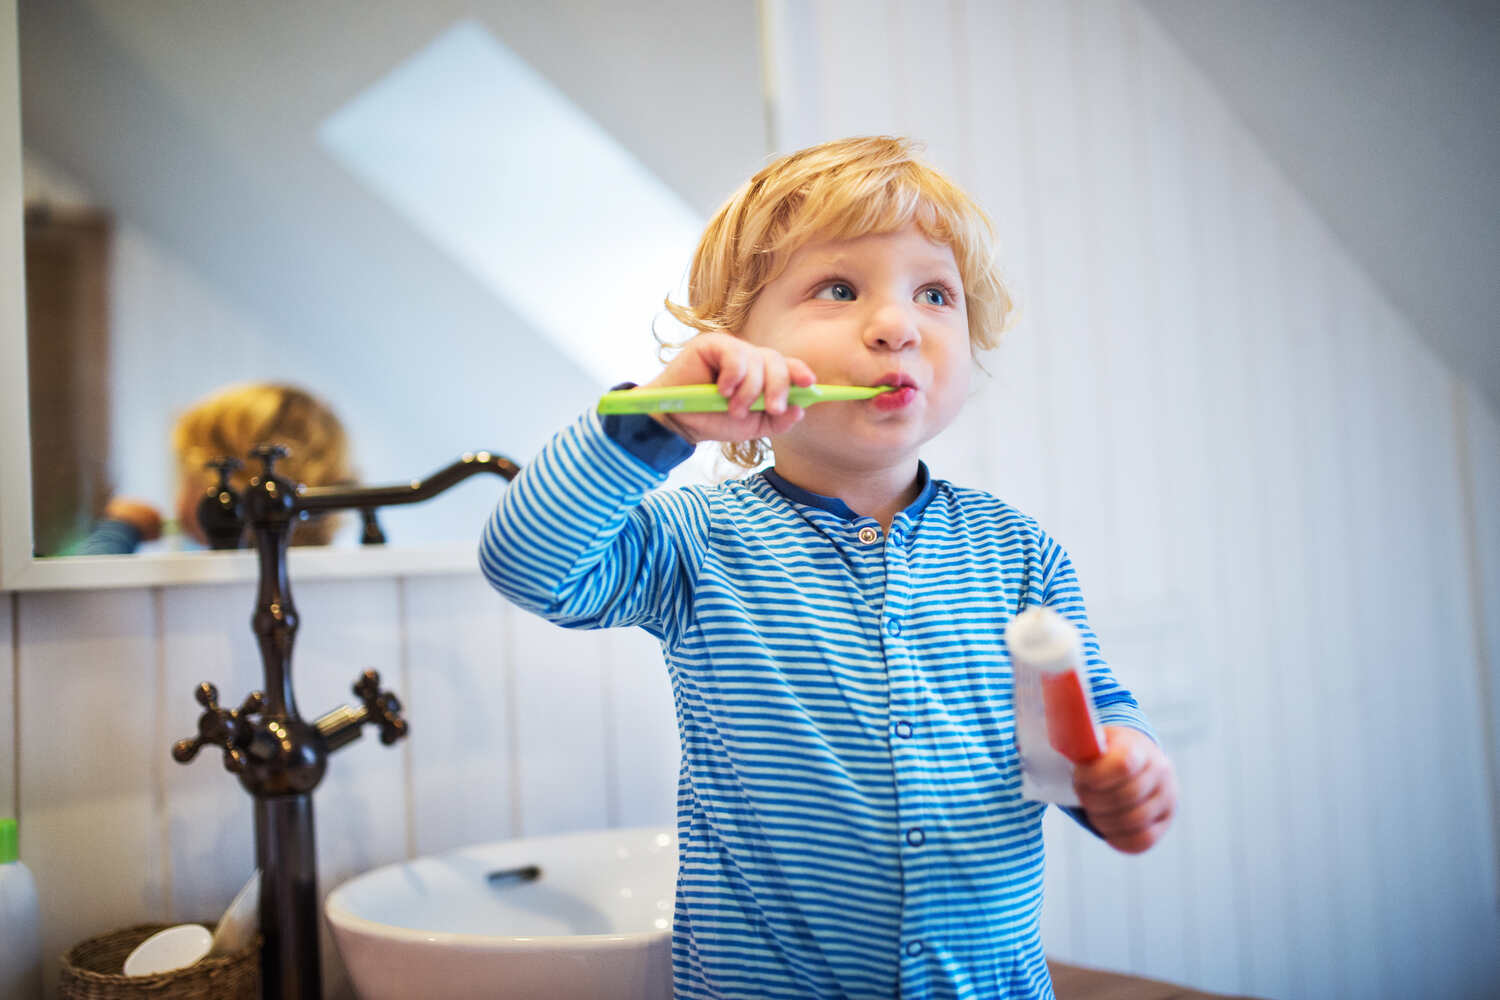 A toddler boy brushing his teeth